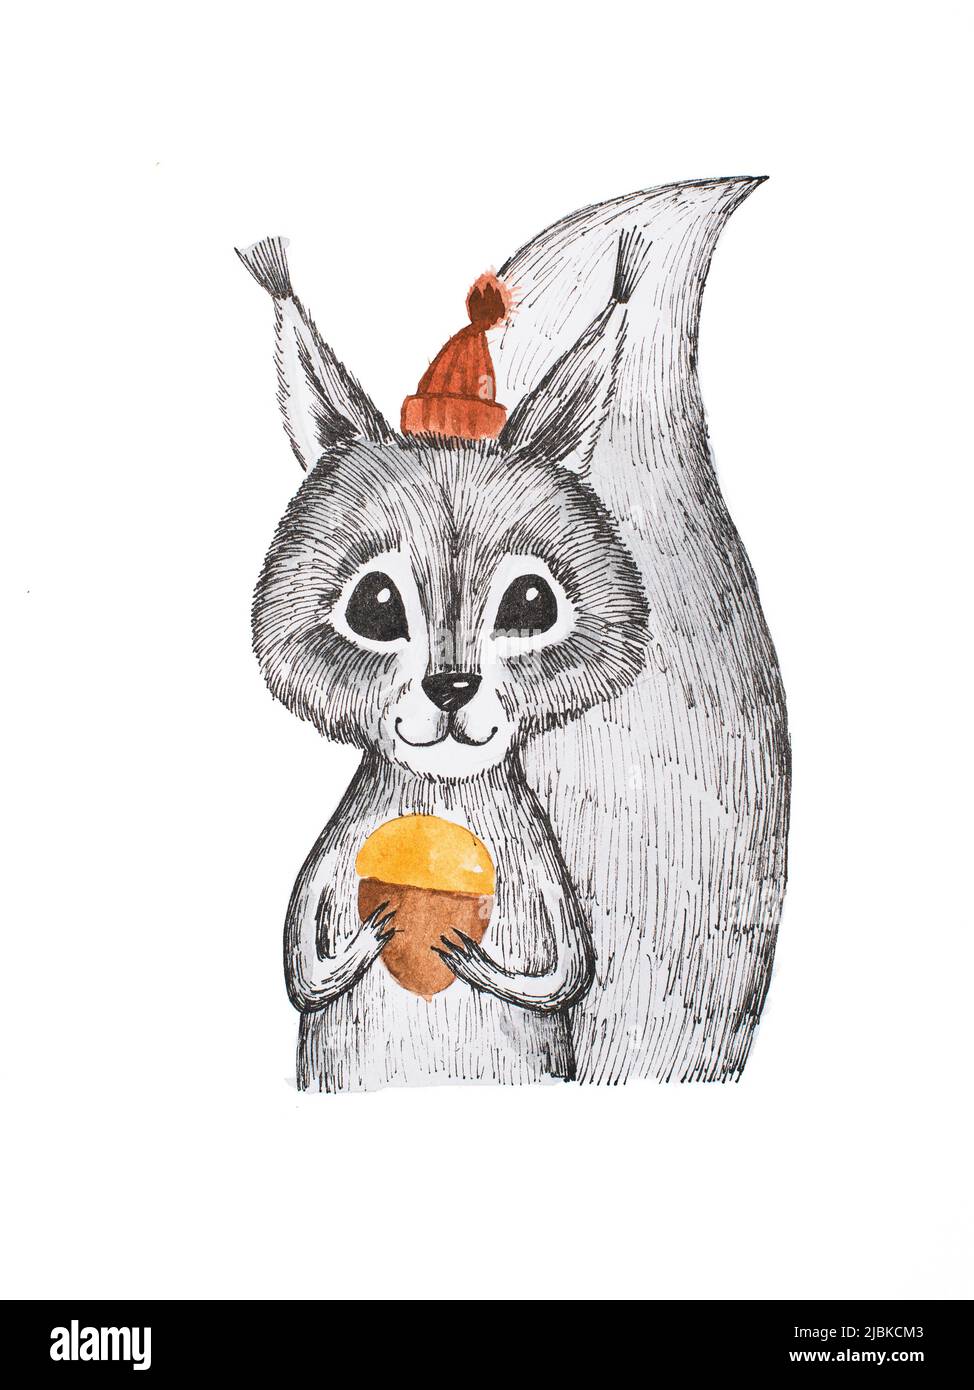 Ritratto disegnato a mano di simpatico scoiattolo bianco e nero che indossa un piccolo cappello rosso e tiene l'acorno. Foto Stock